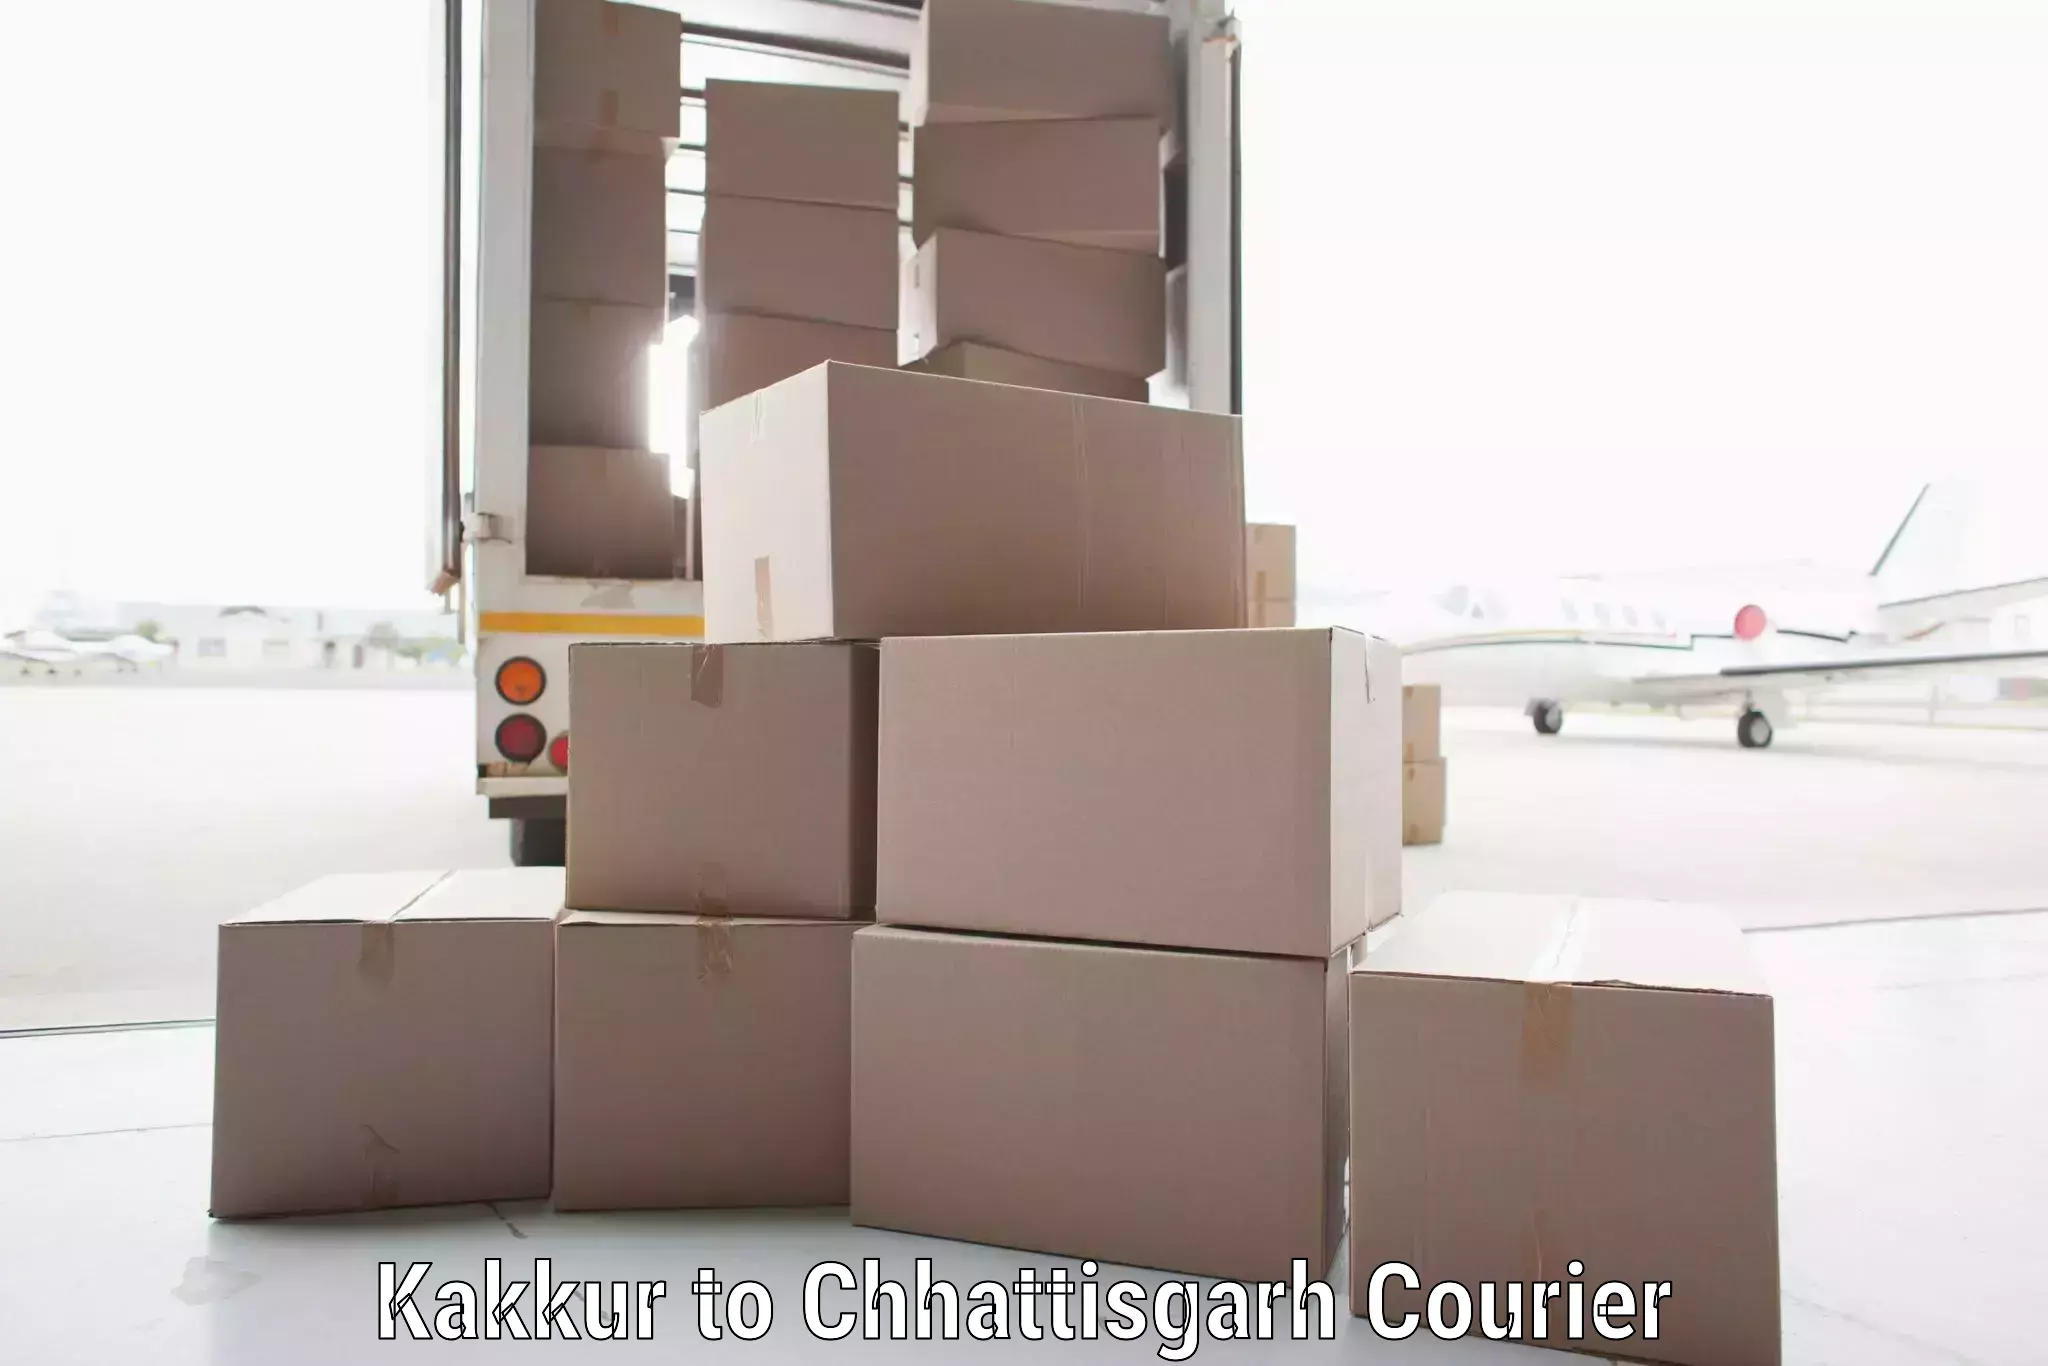 Online package tracking Kakkur to Chhattisgarh